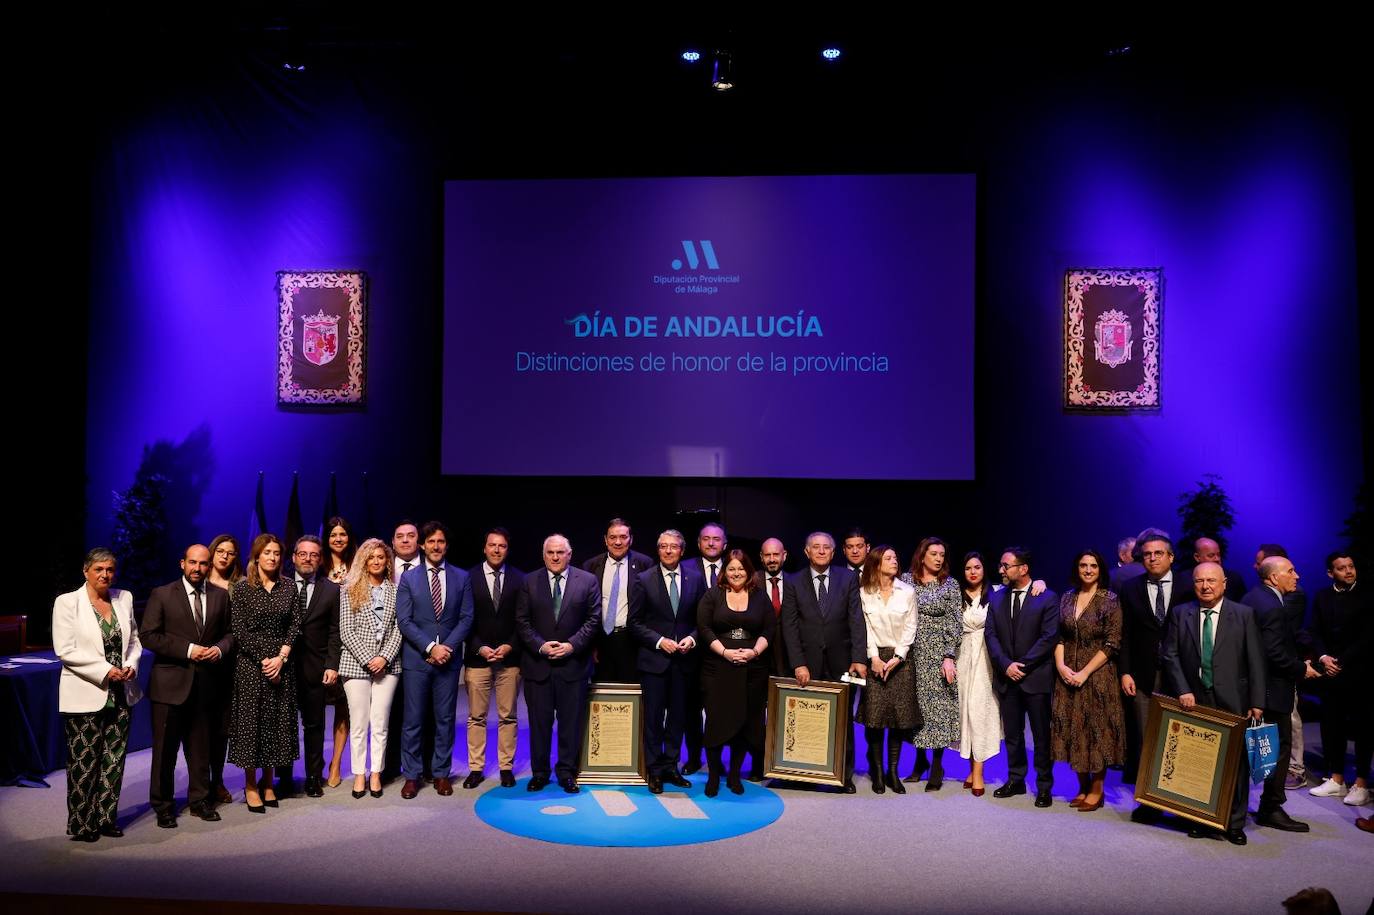 Los galardonados de esta edición, además del reconocimiento a los nueve bomberos del CPB, son la Asociación de Empresarios de Playas de Málaga, la peña flamenca Juan Breva, el equipo de fútbol sala Besoccer CD UMA Antequera y el periodista de SUR Pedro Luis Gómez.